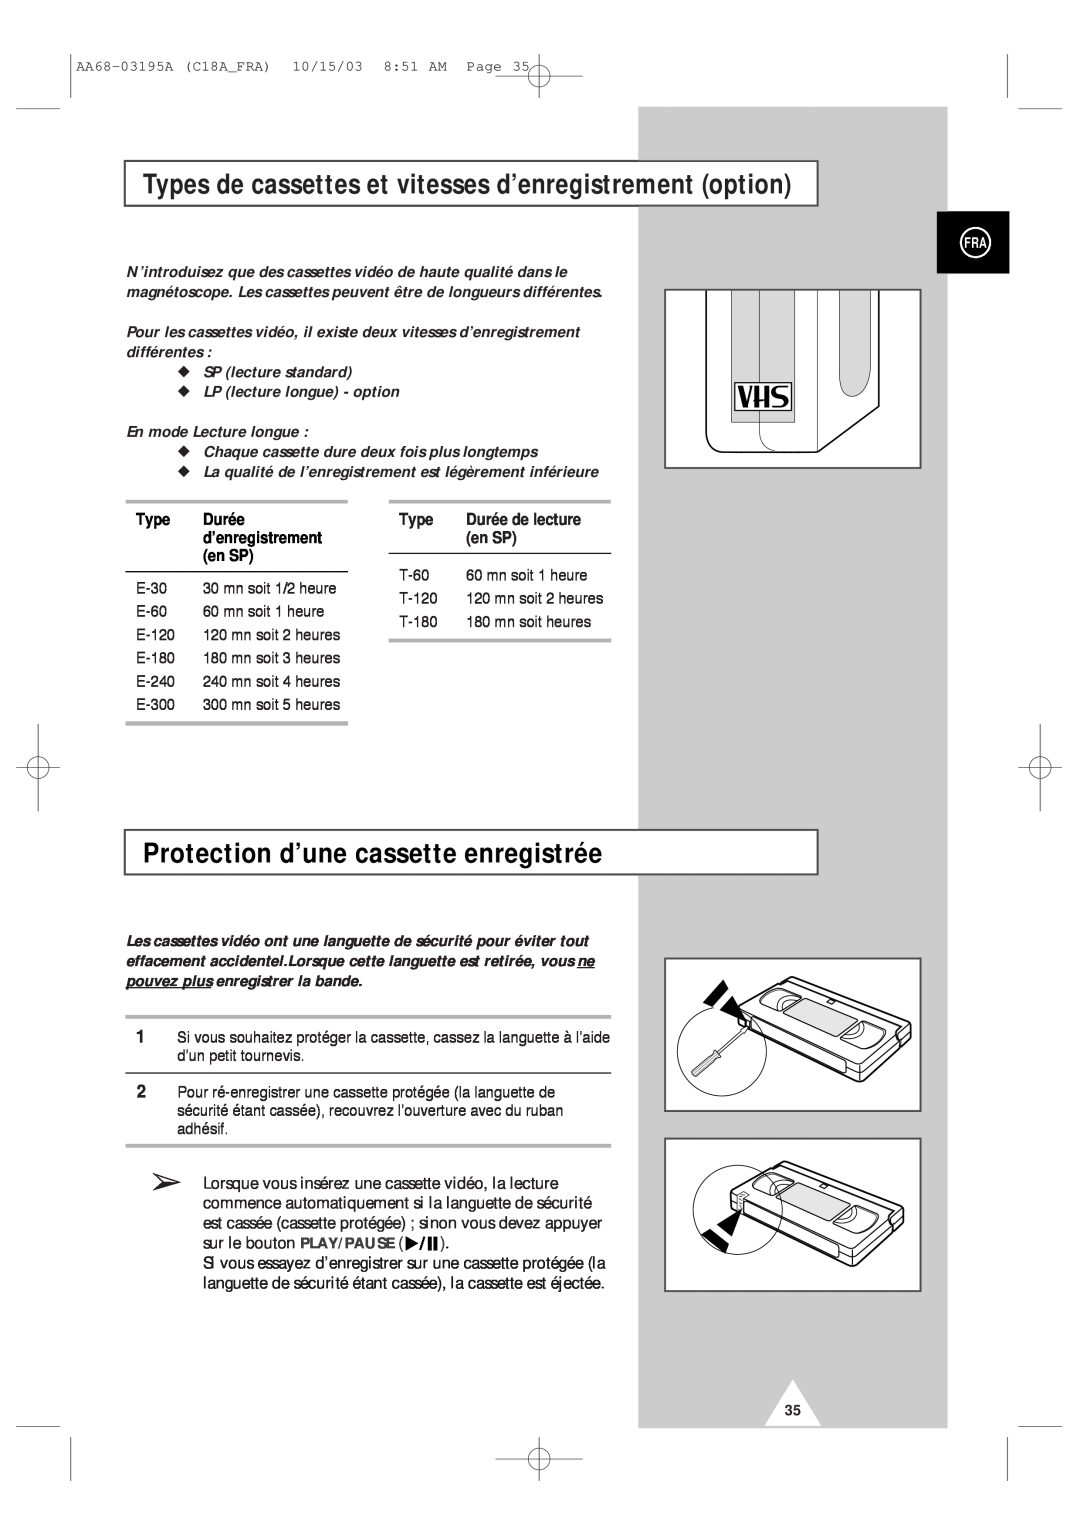 Samsung UW17J11VD5XXEF manual Types de cassettes et vitesses d’enregistrement option, Protection d’une cassette enregistrée 